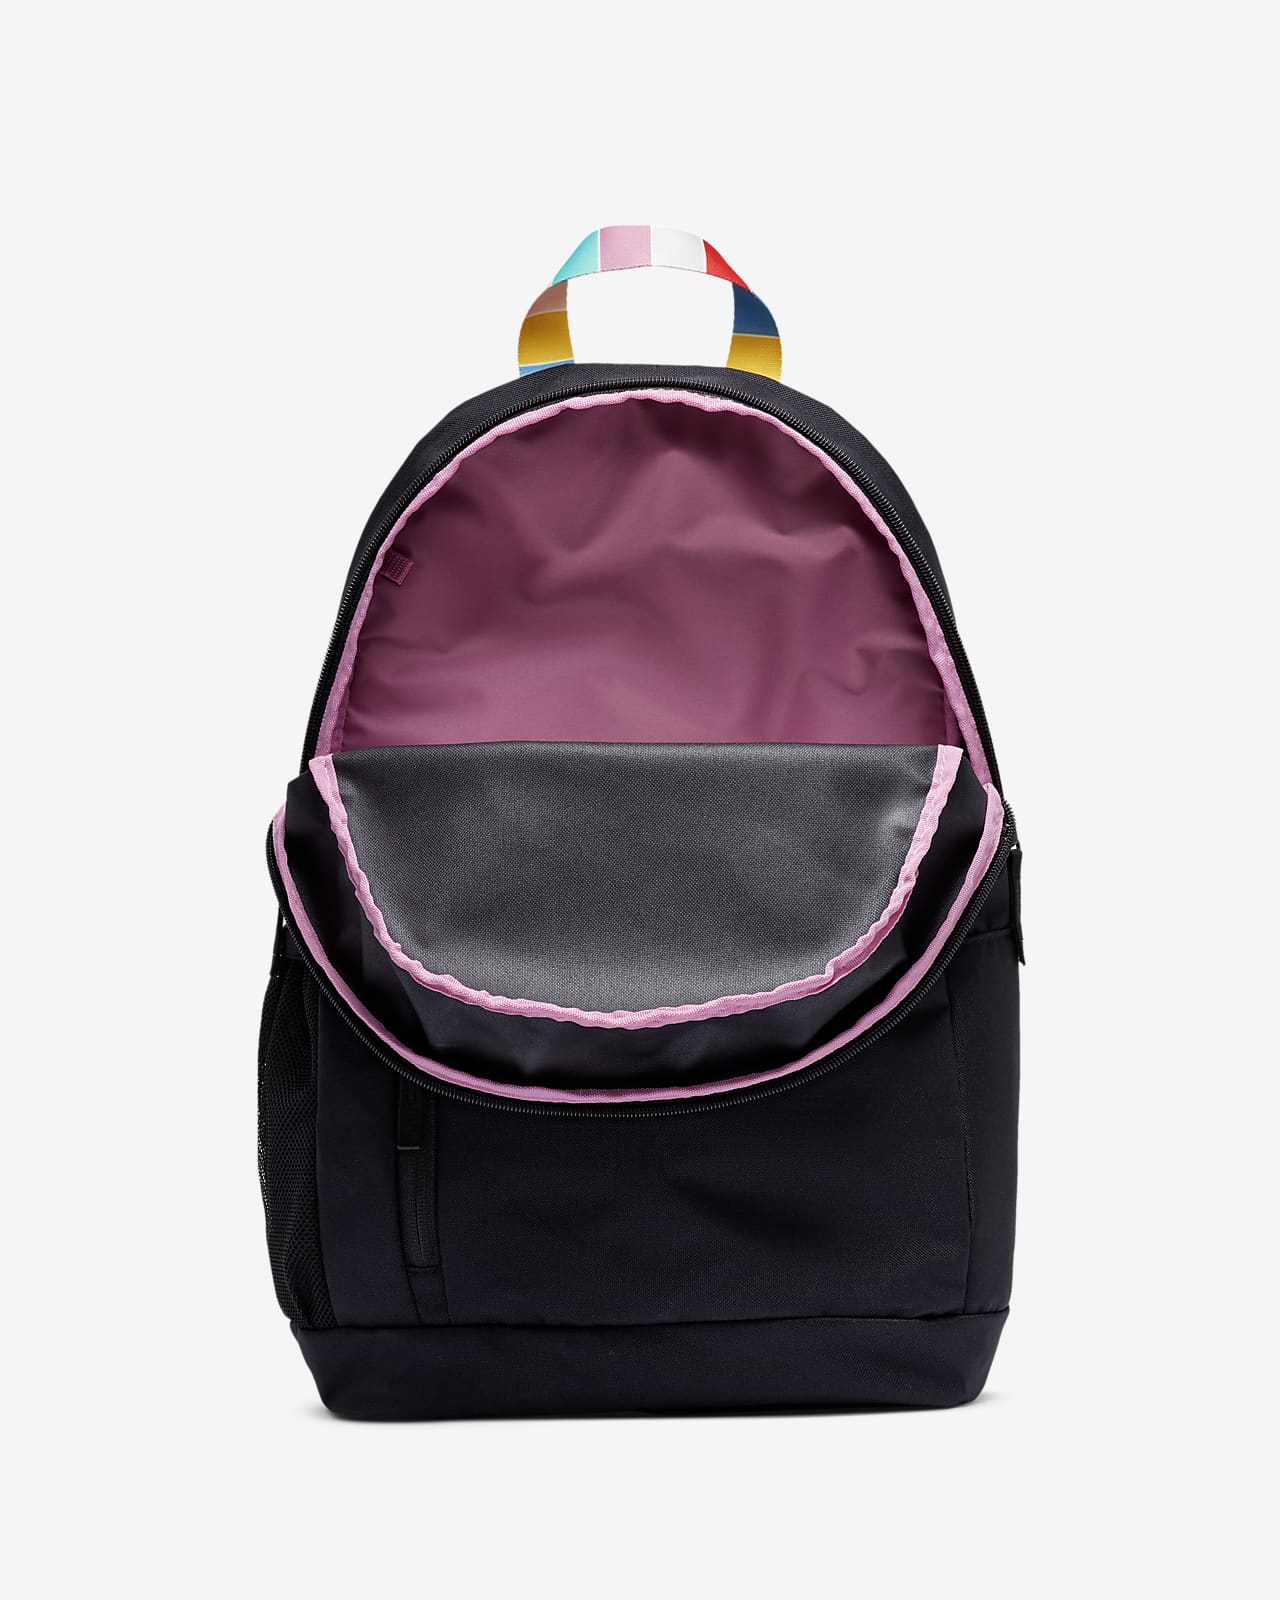 nike colorful backpack